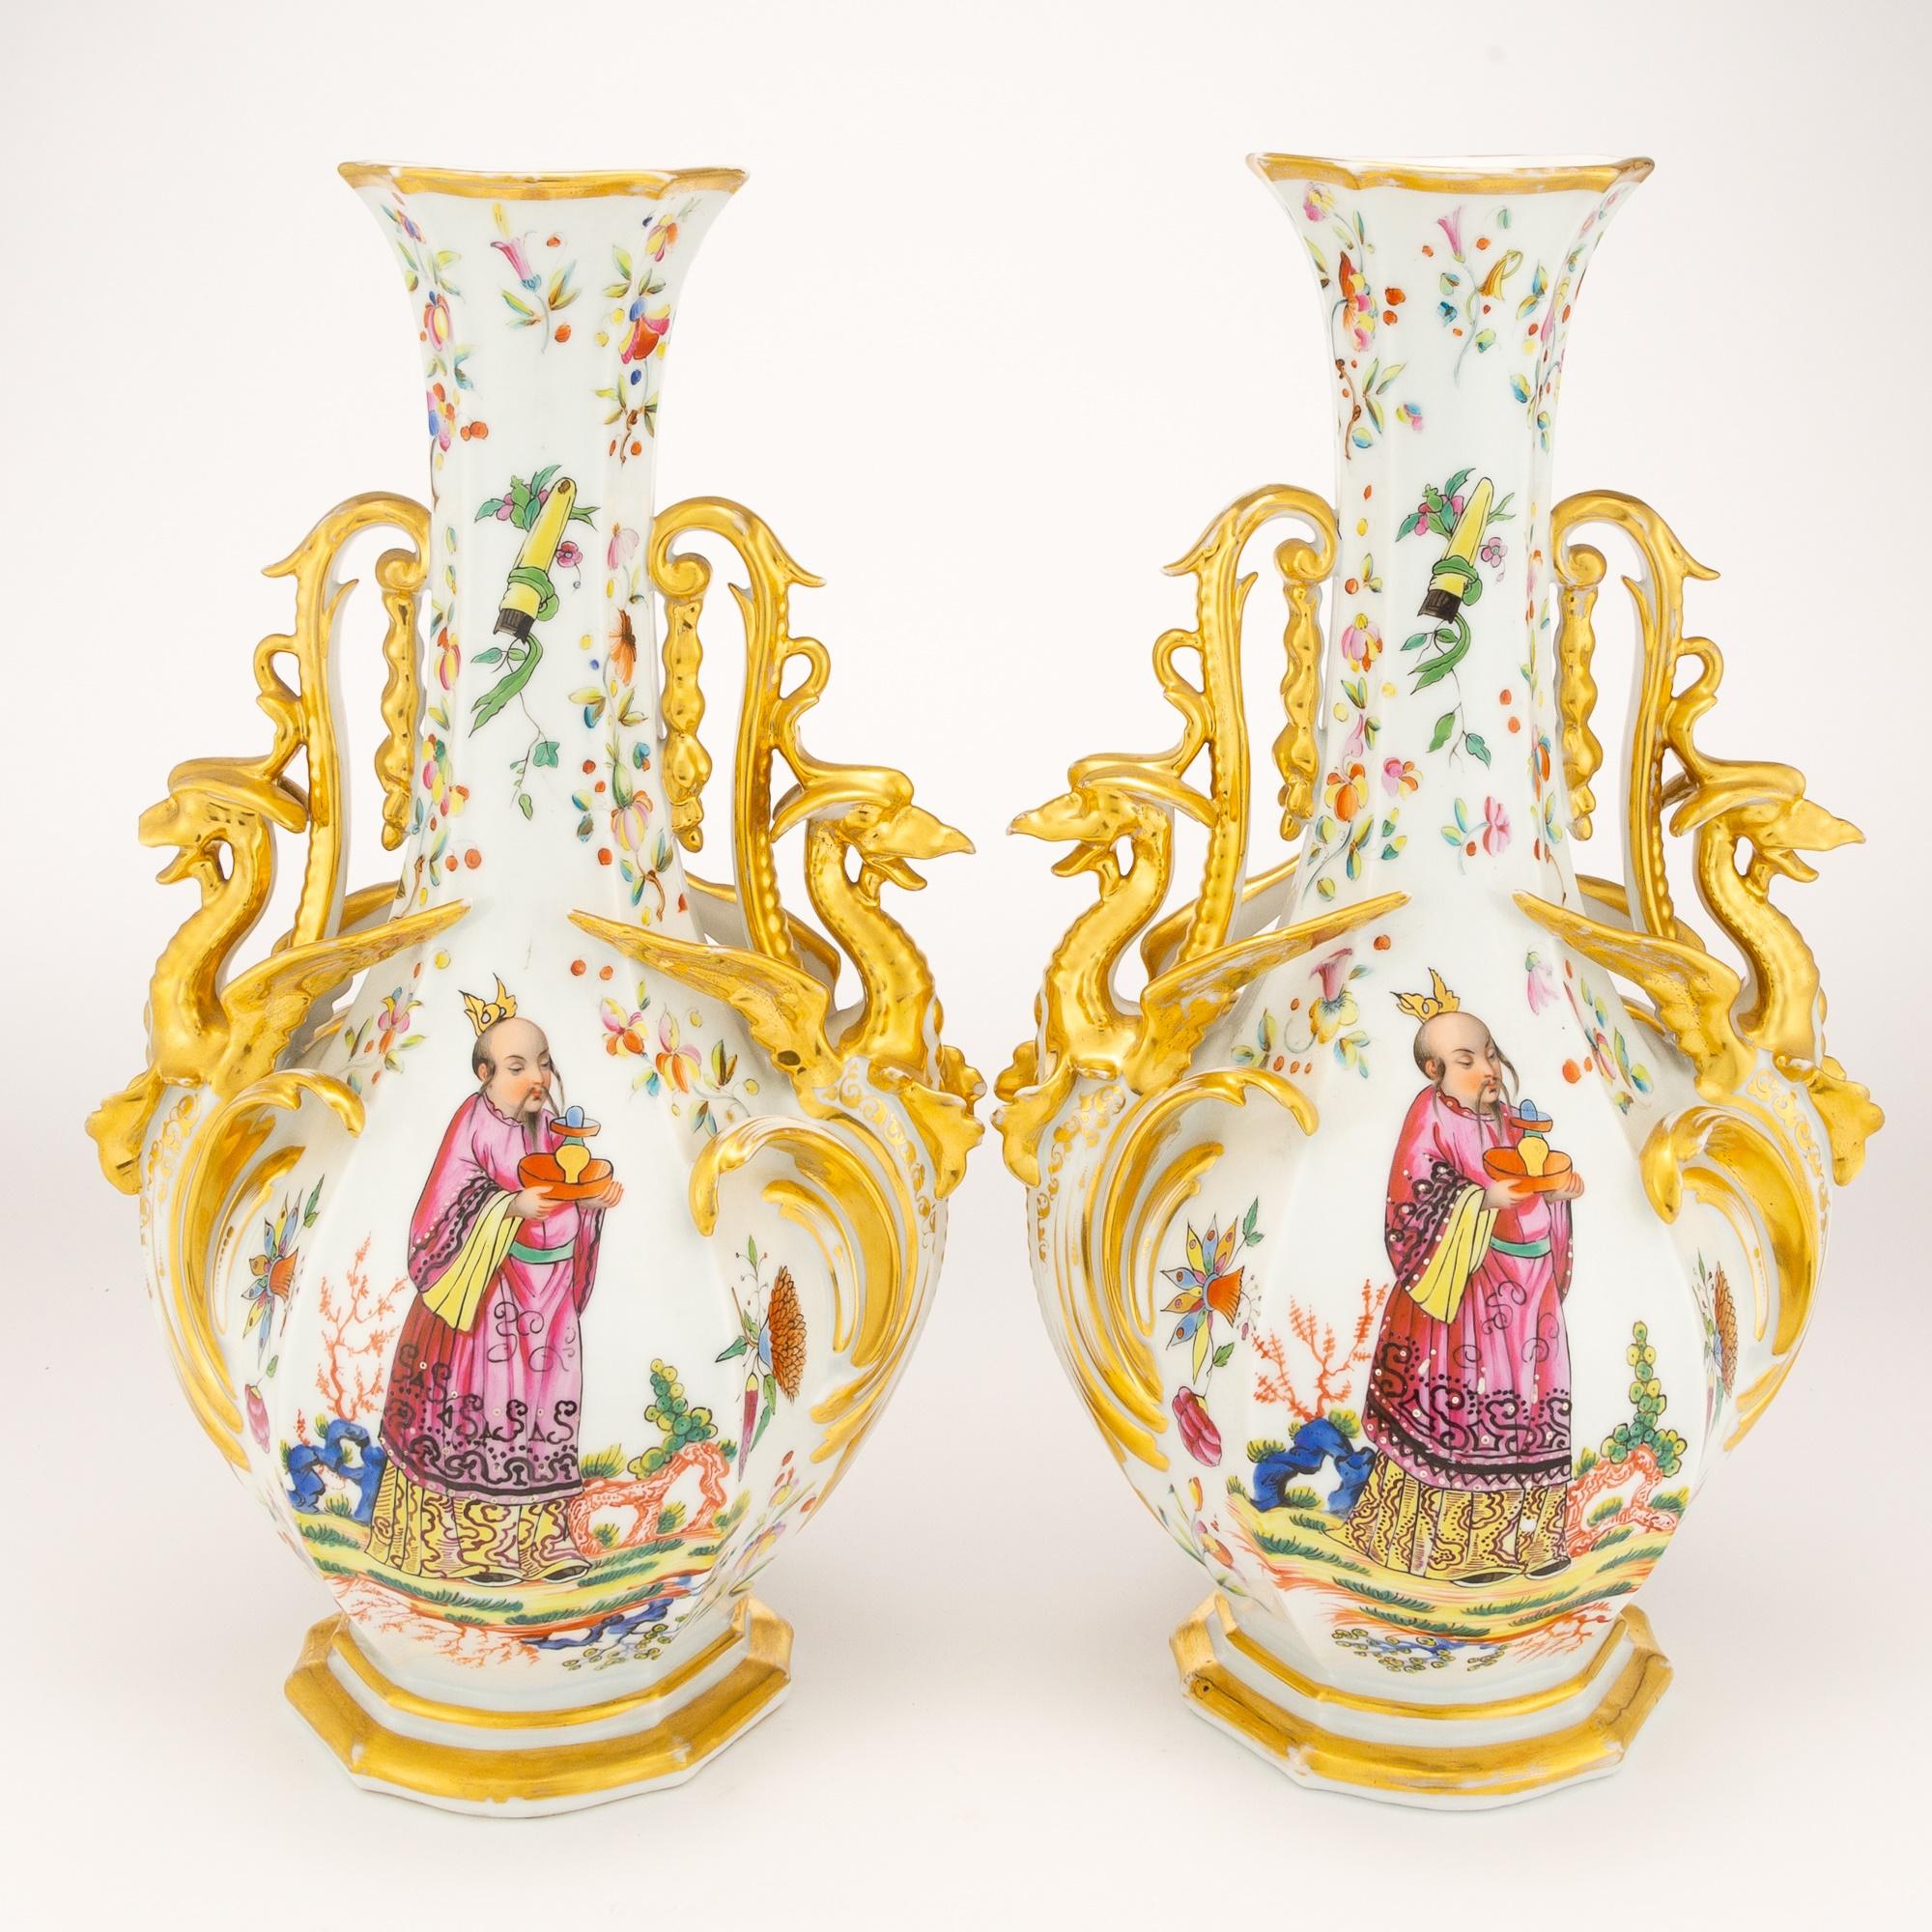 L'élégance intemporelle de cette paire de vases en porcelaine dorée et polychrome de la fin du XIXe siècle rehausse votre espace. Fabriqué avec une attention méticuleuse aux détails, chaque vase présente une forme de bouteille avec de magnifiques